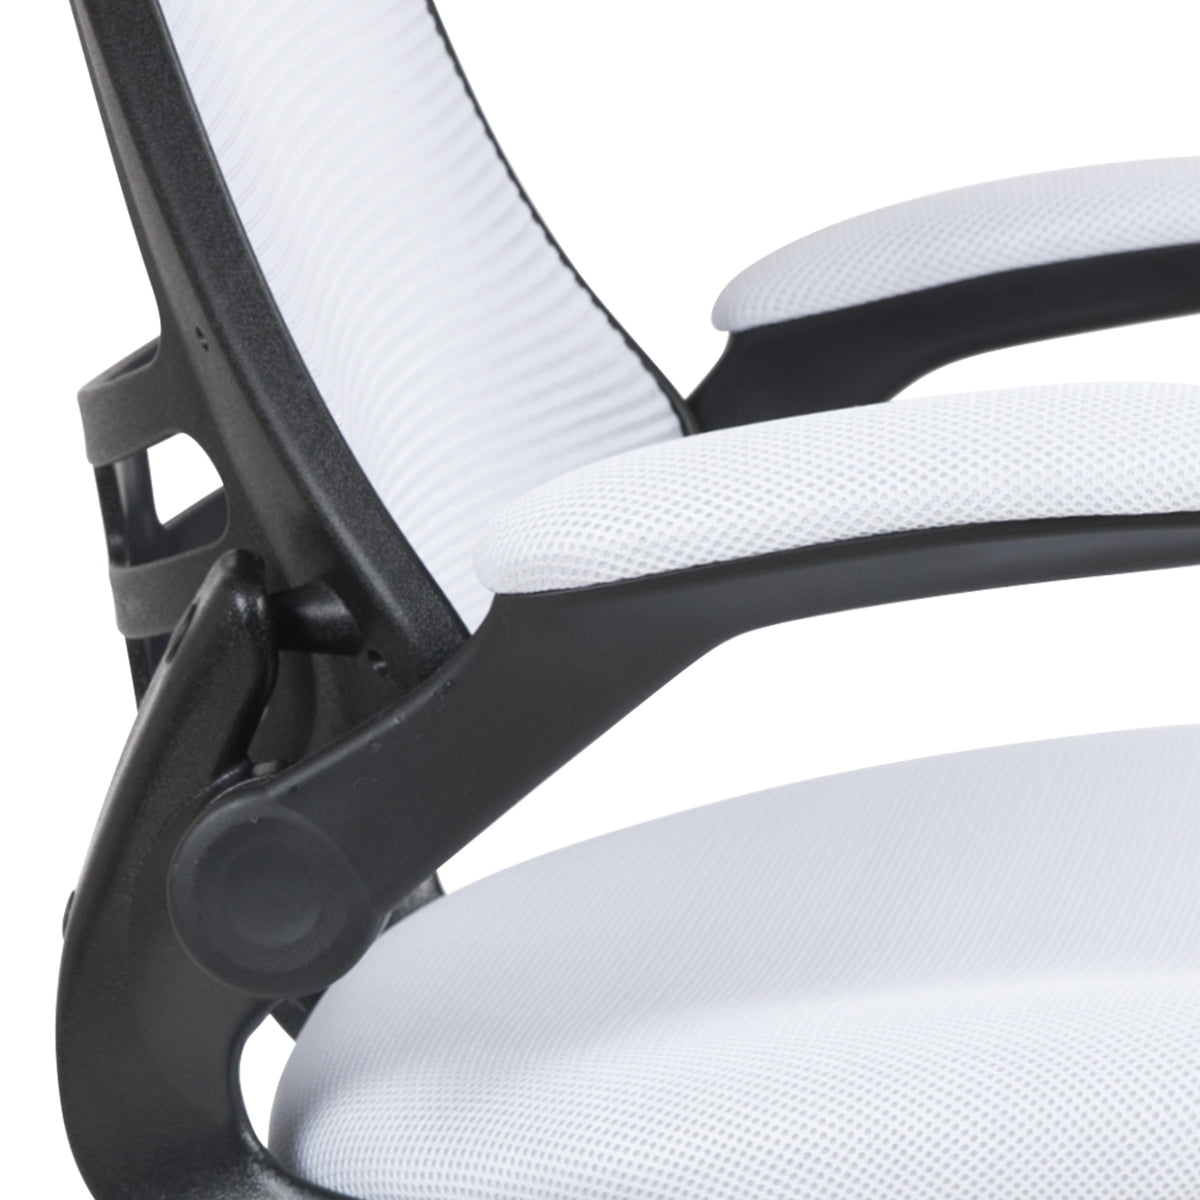 White Mesh/Black Frame |#| Mid-Back White Mesh Swivel Ergonomic Task Office Desk Chair with Flip-Up Arms